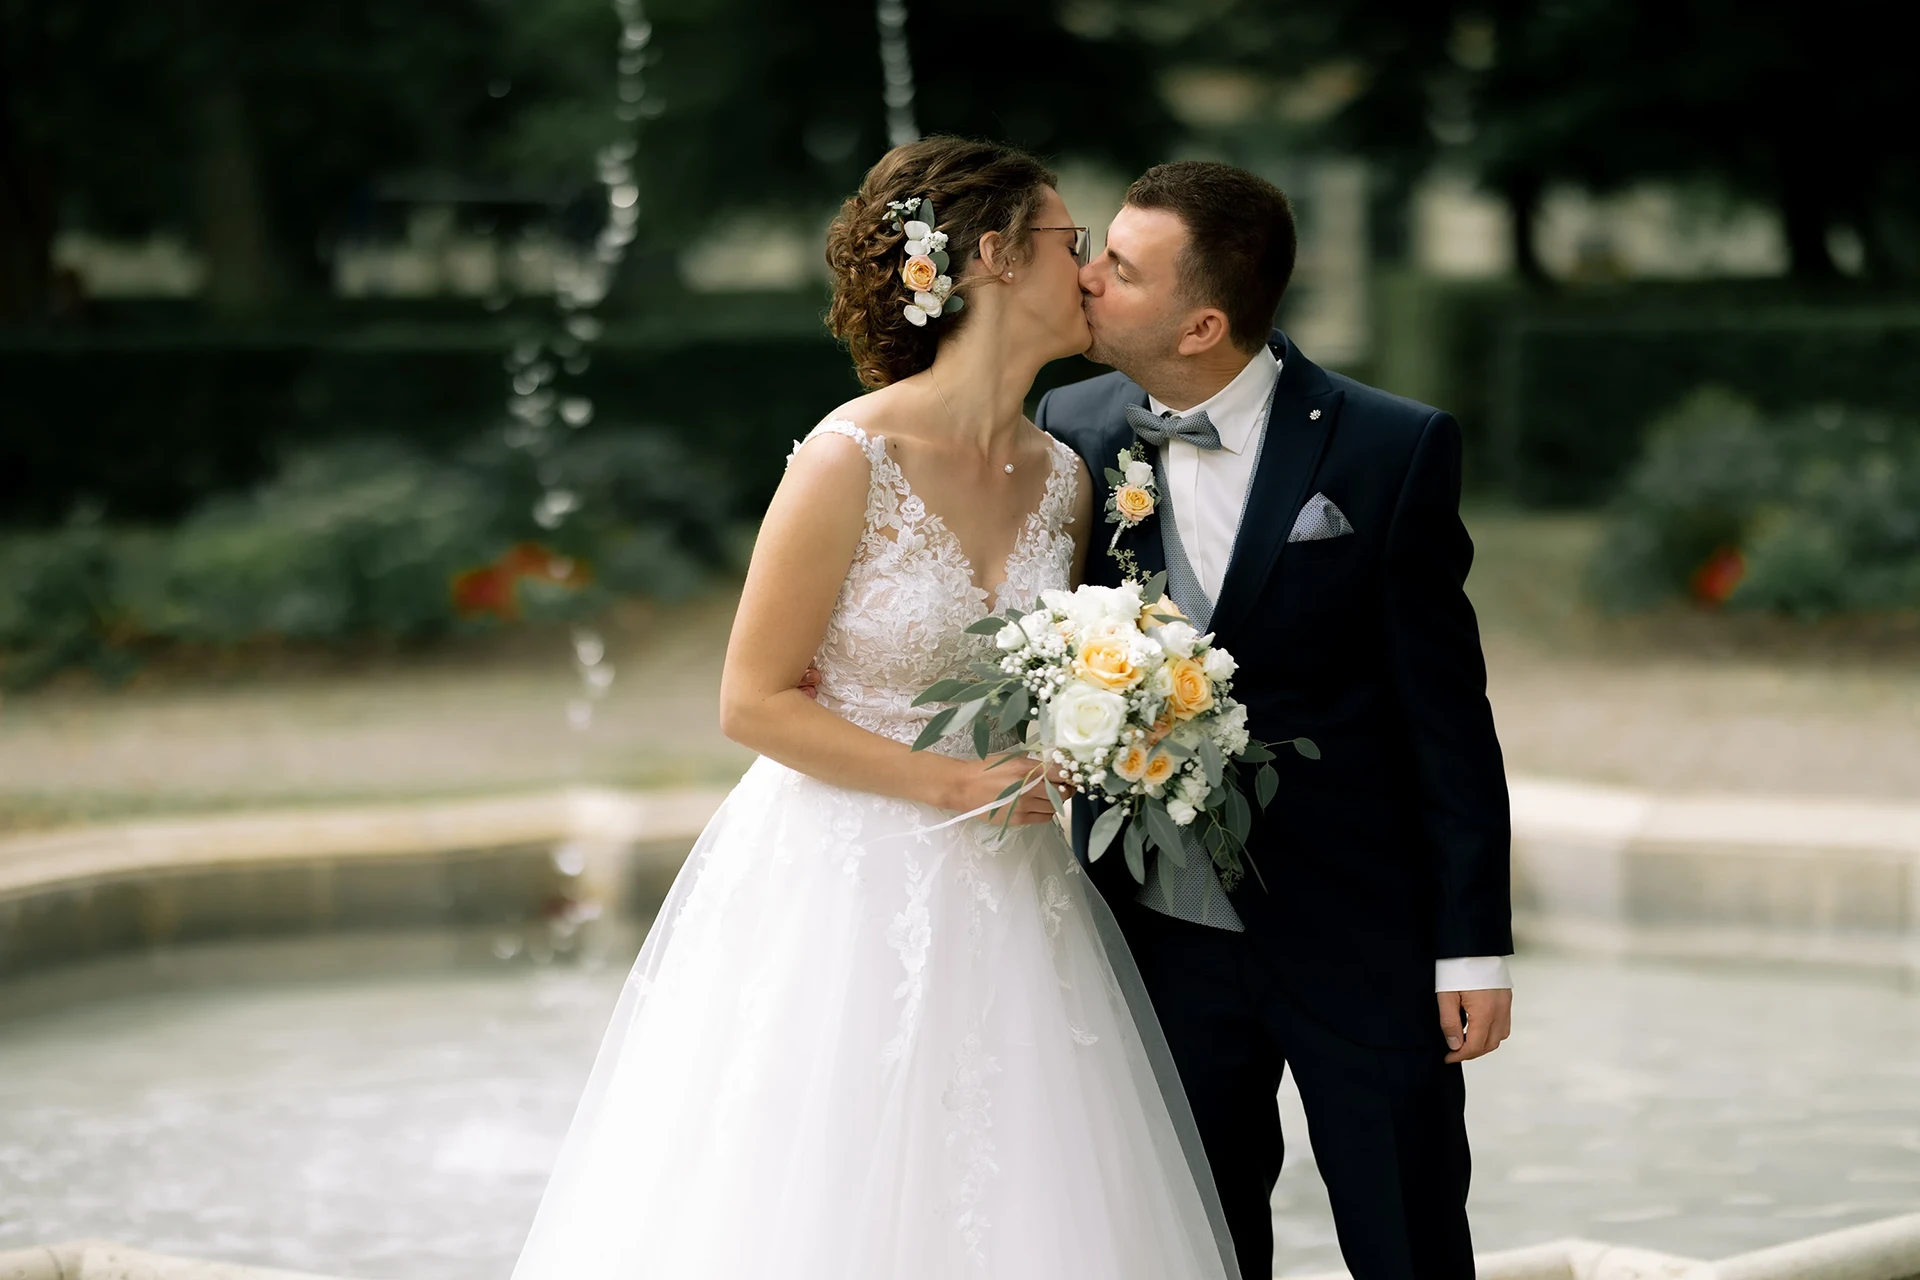 Das Brautpaar küsst sich vor einem Brunnen.